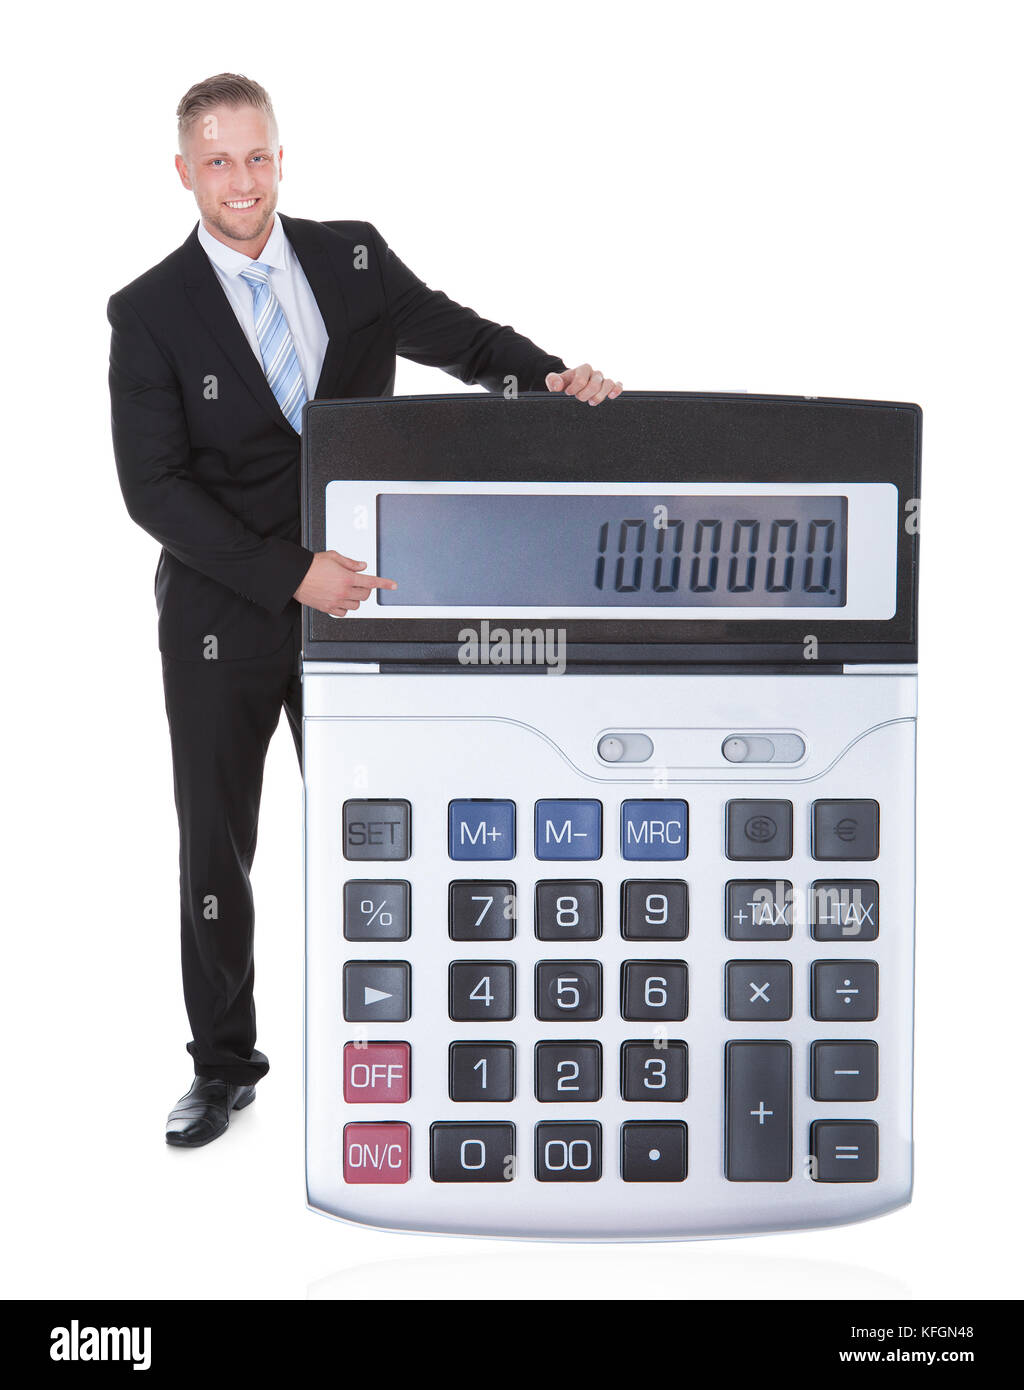 Sorridente imprenditore attraente in una tuta visualizzando un una grande calcolatrice con la tastiera verso la telecamera concettuale immagine finanziaria isolato Foto Stock